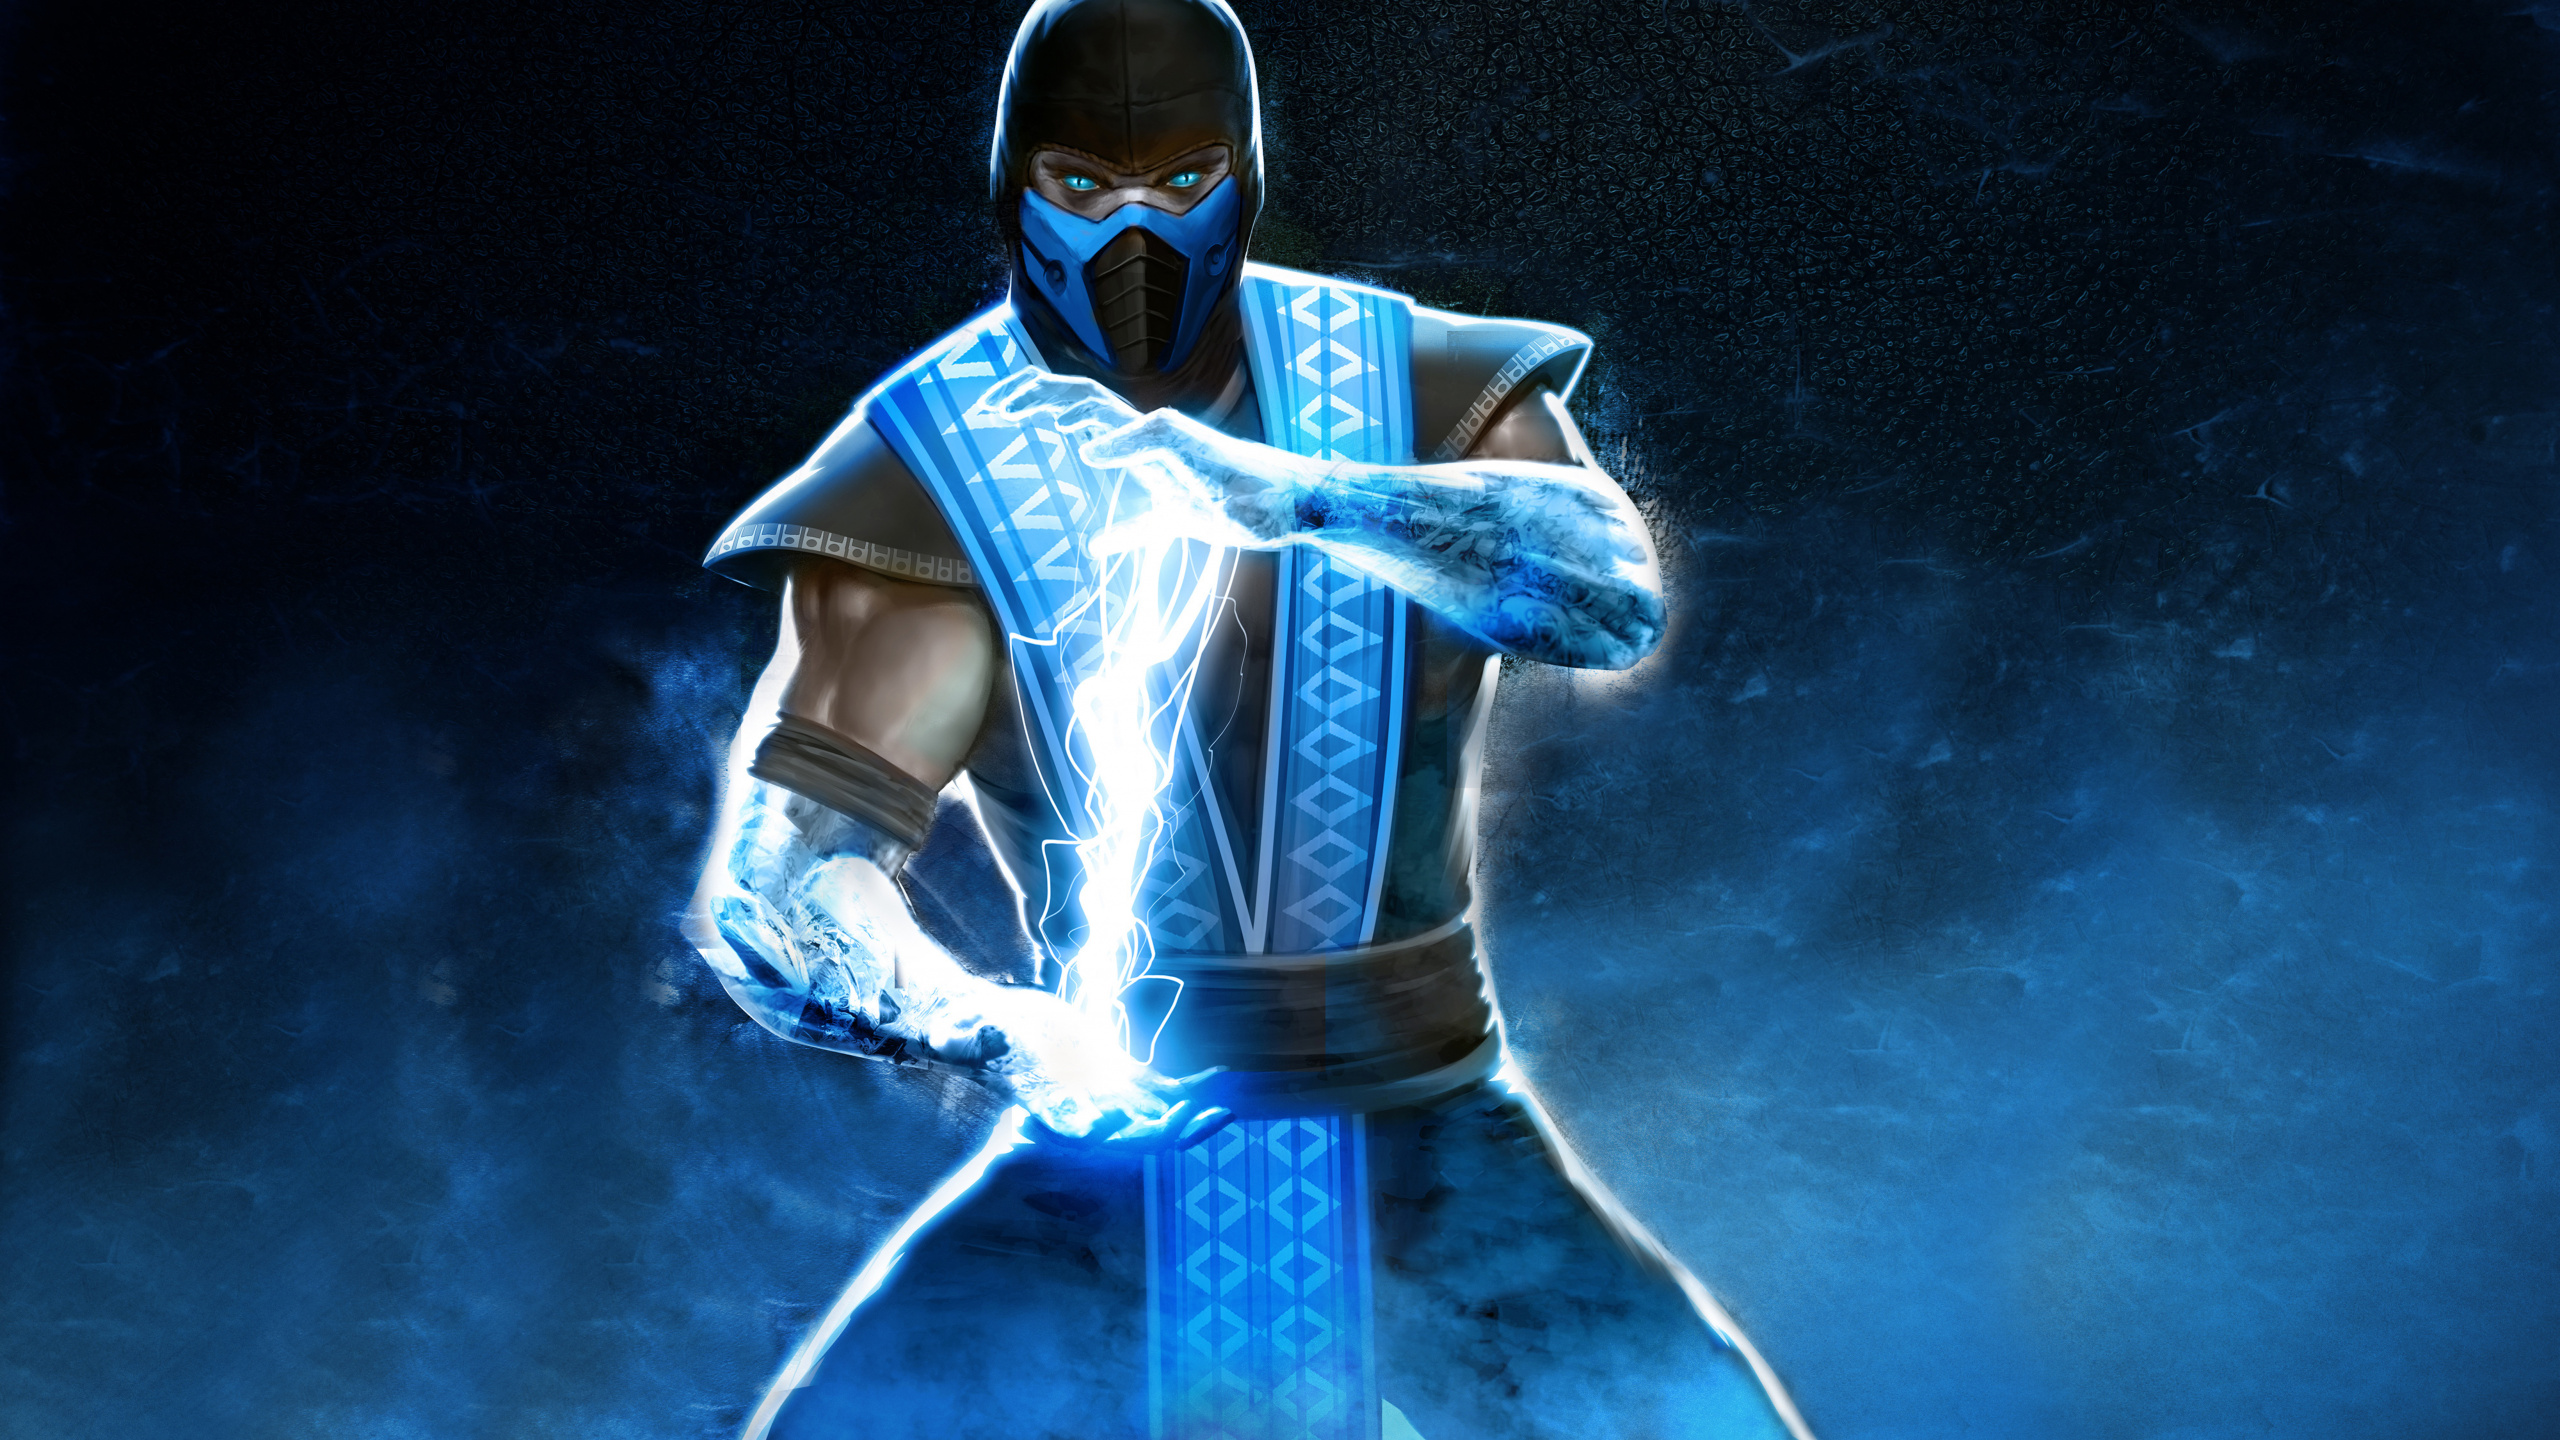 Mortal Kombat x, Scorpion, Mortal Kombat, Blue, Costume. Wallpaper in 2560x1440 Resolution